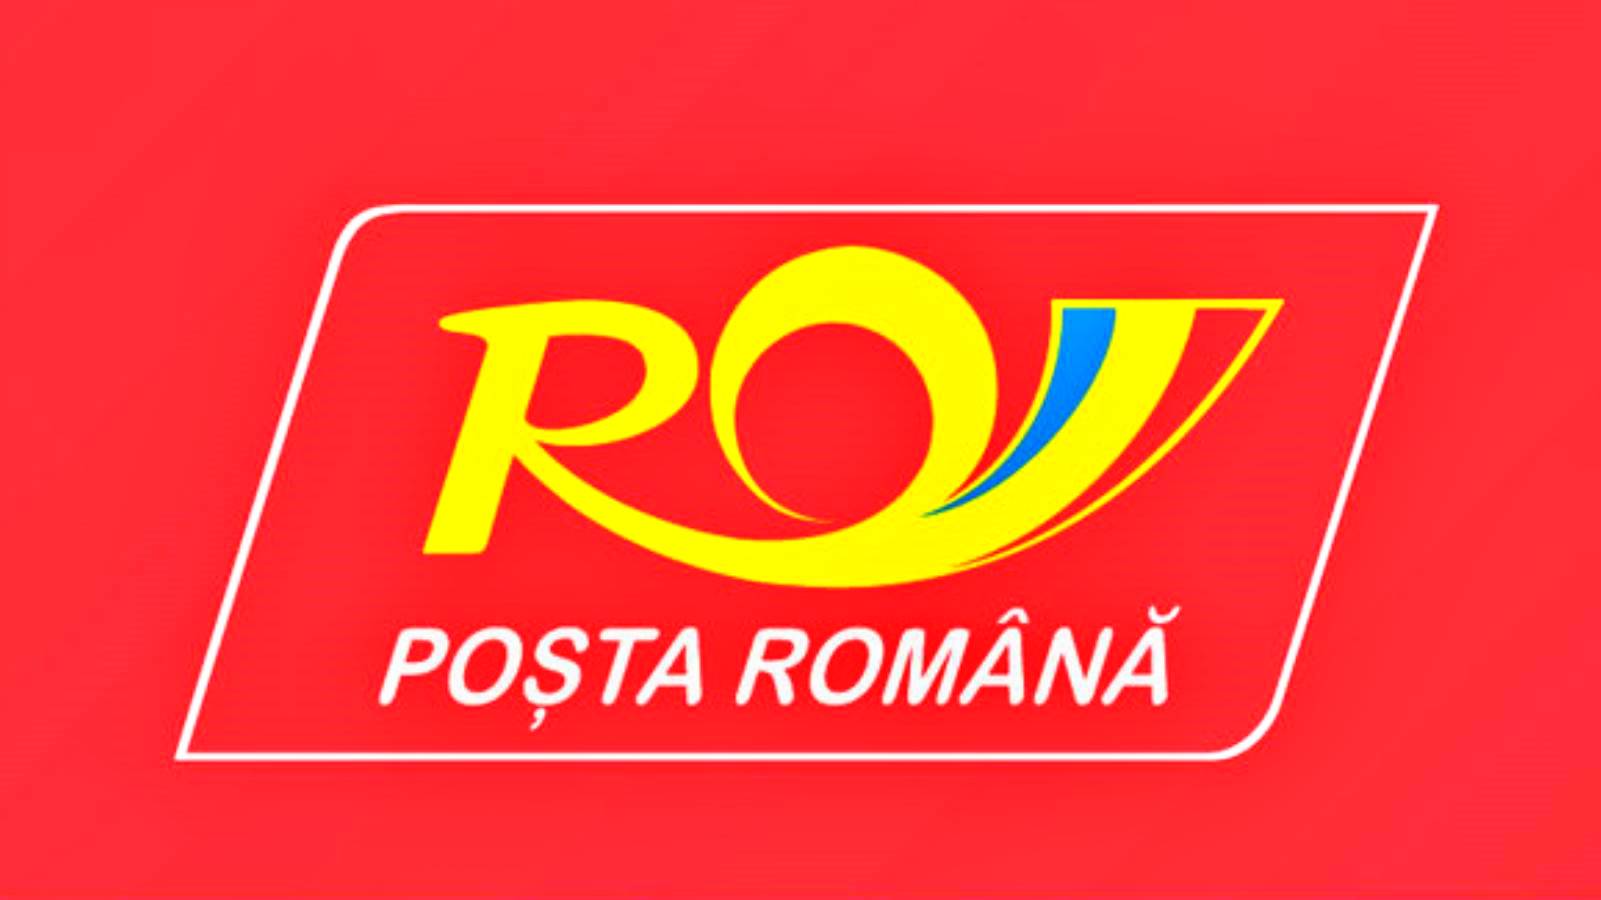 Seguro postal rumano de envíos por robo y destrucción